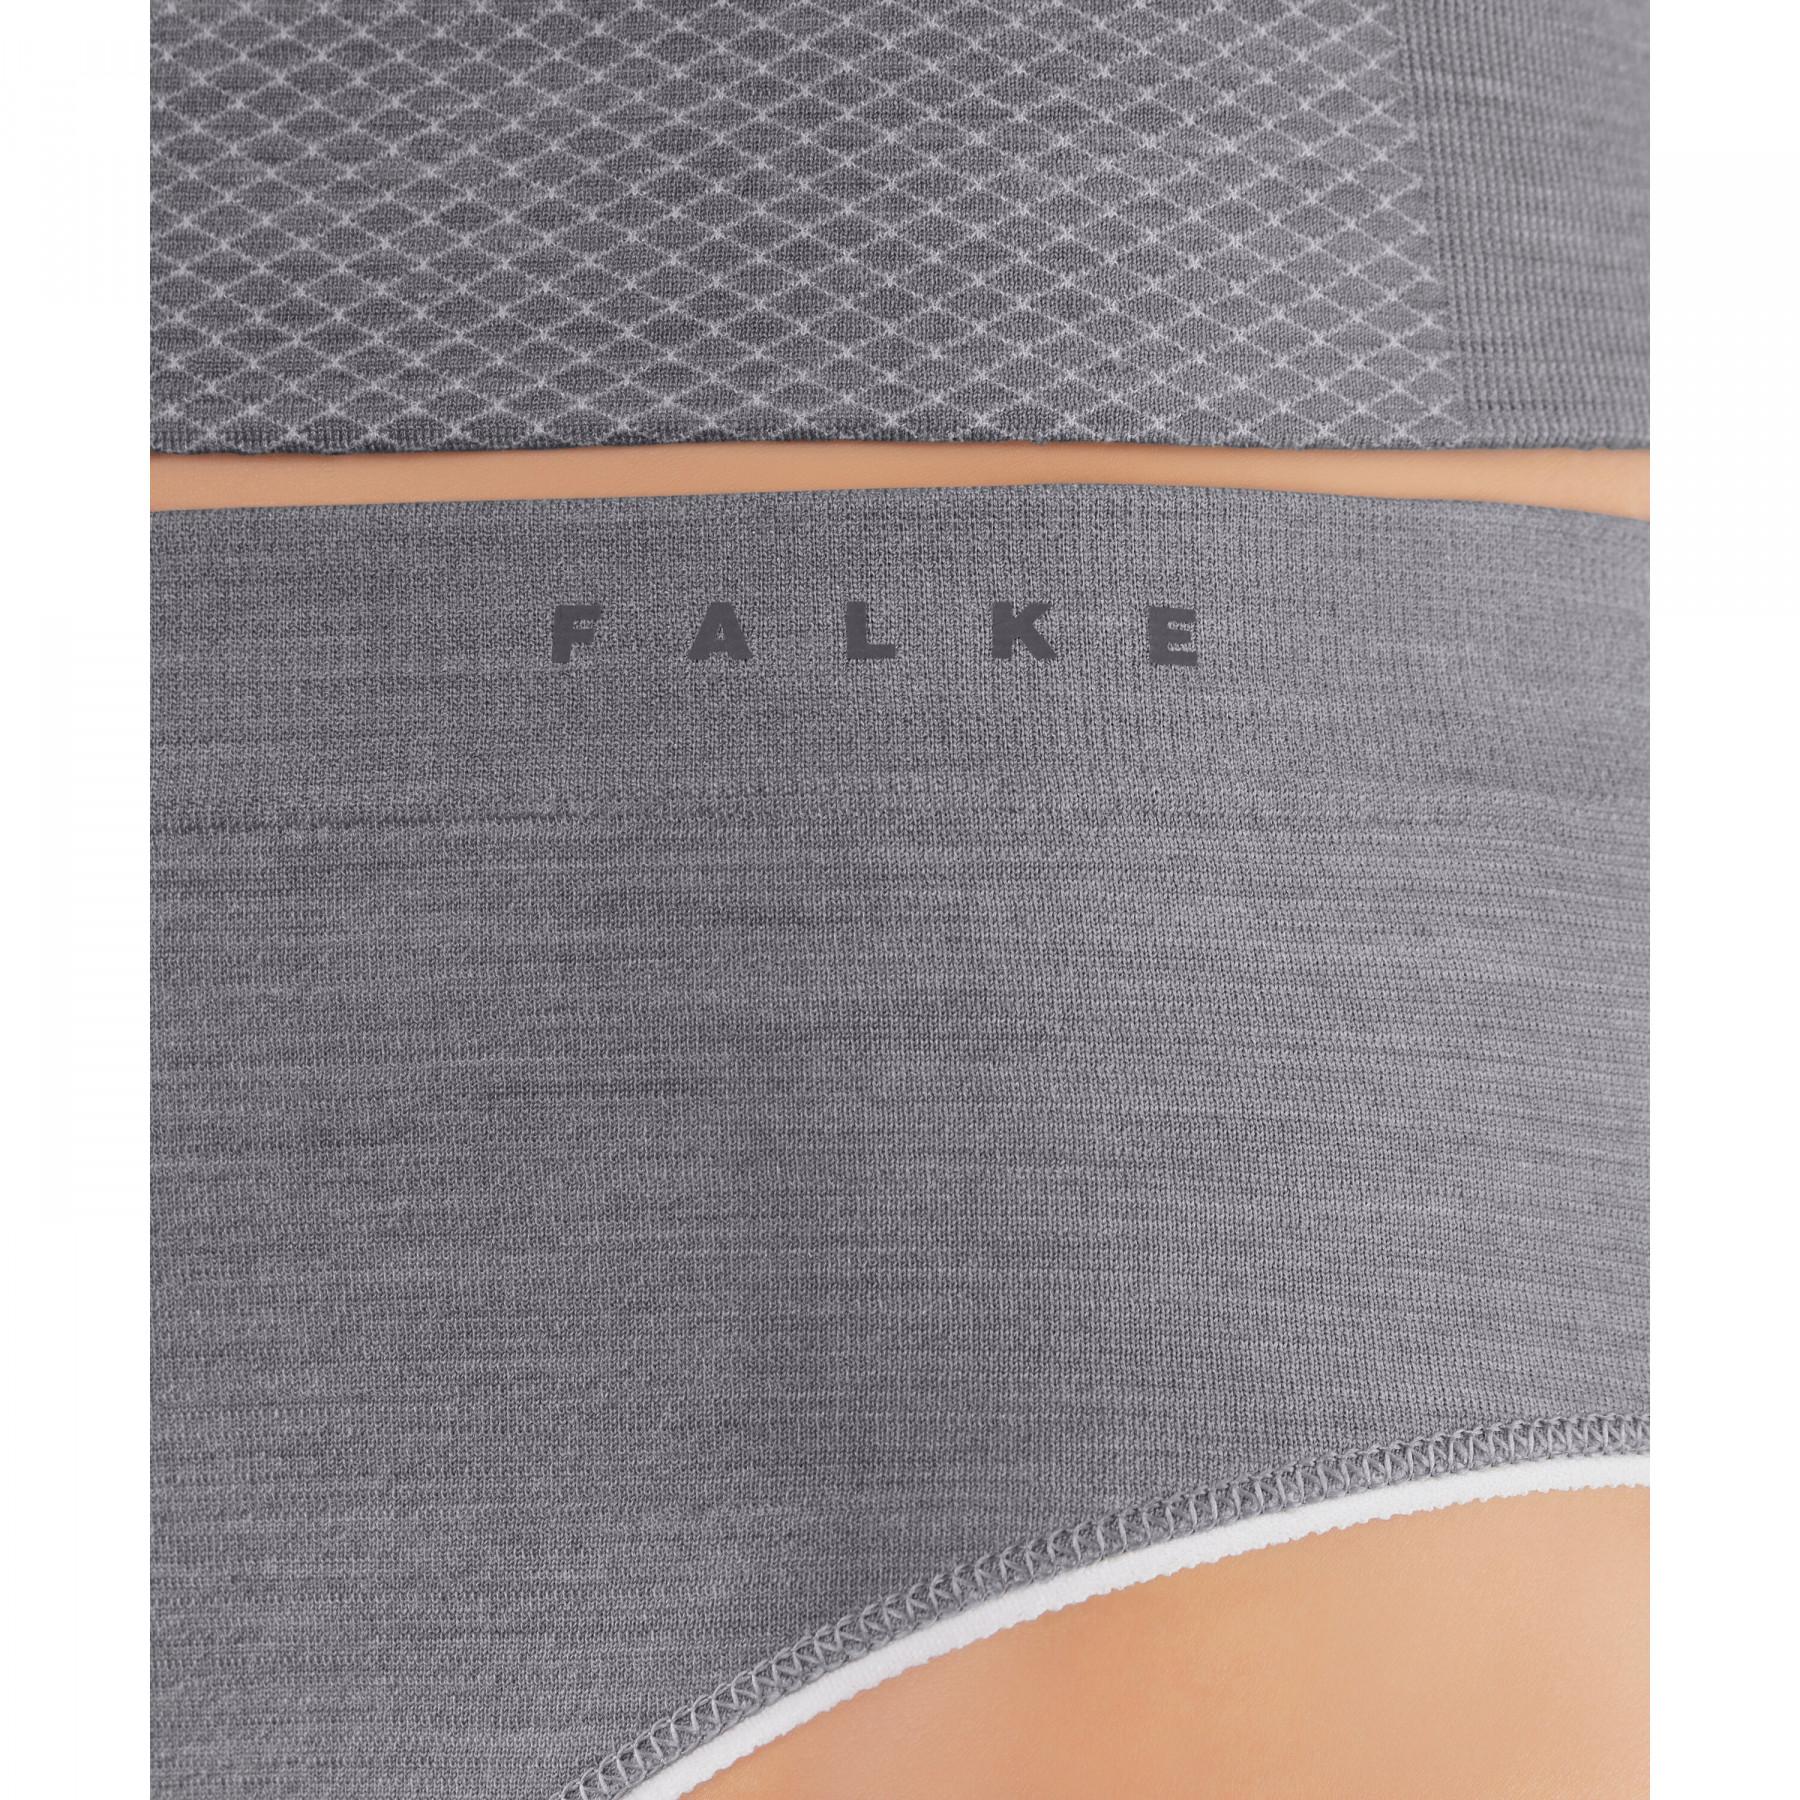 Women's panties Falke Wool-Tech Light